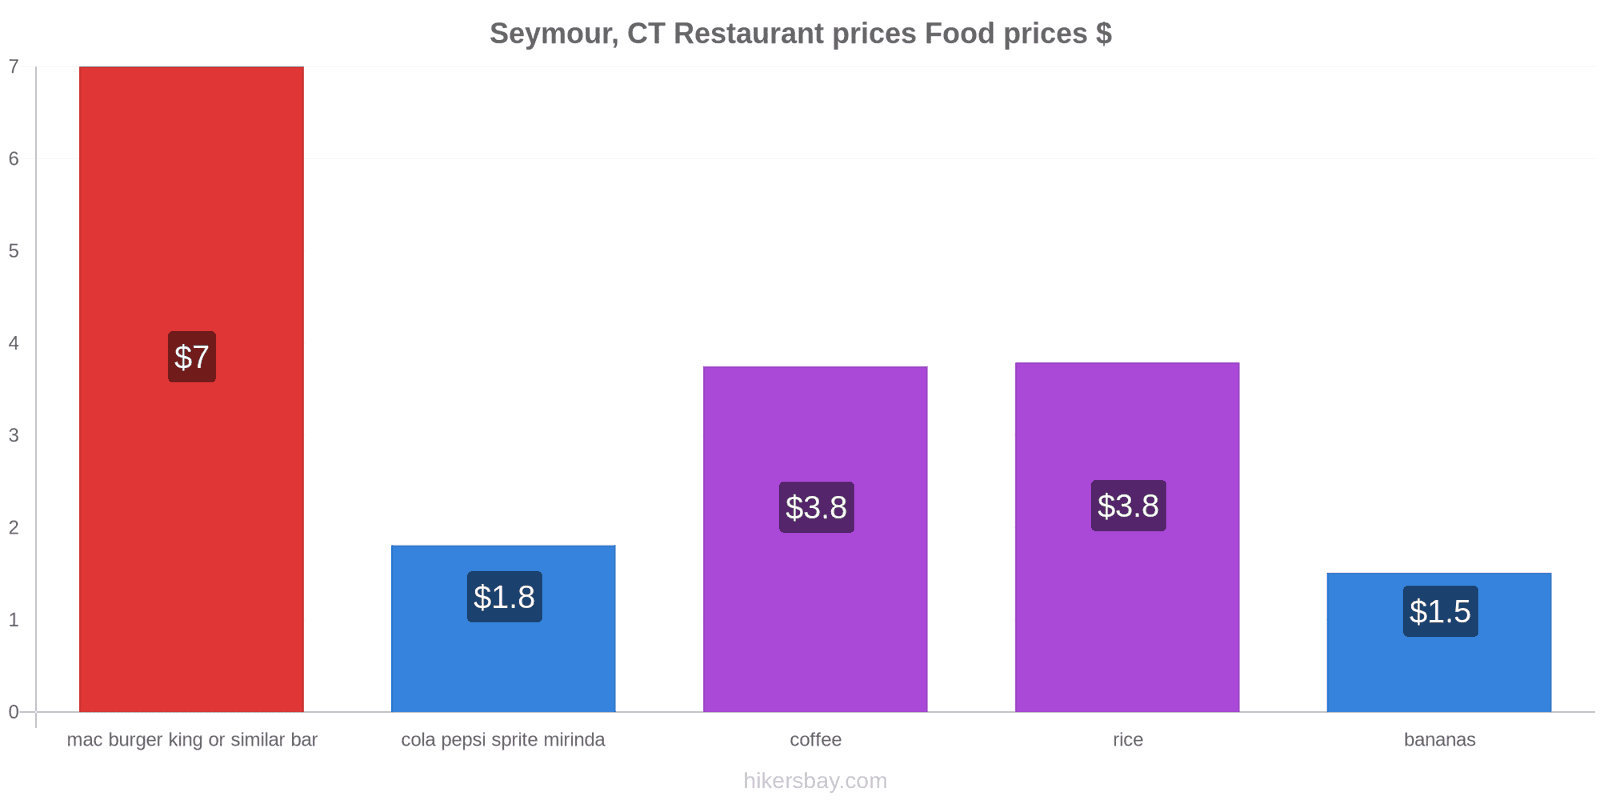 Seymour, CT price changes hikersbay.com